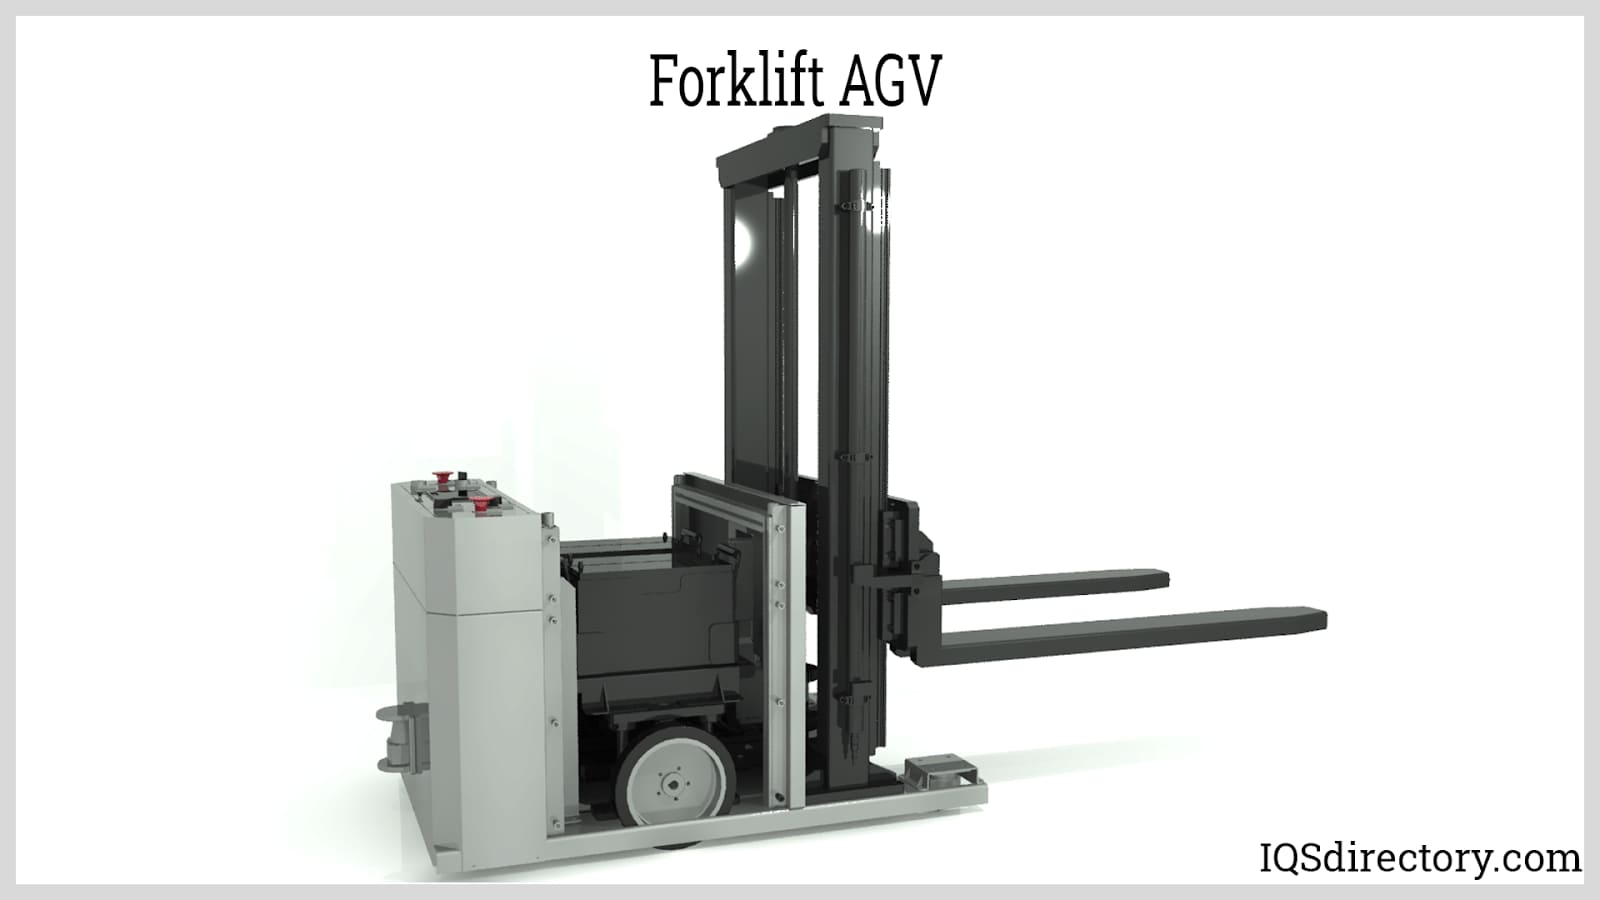 “Forklift